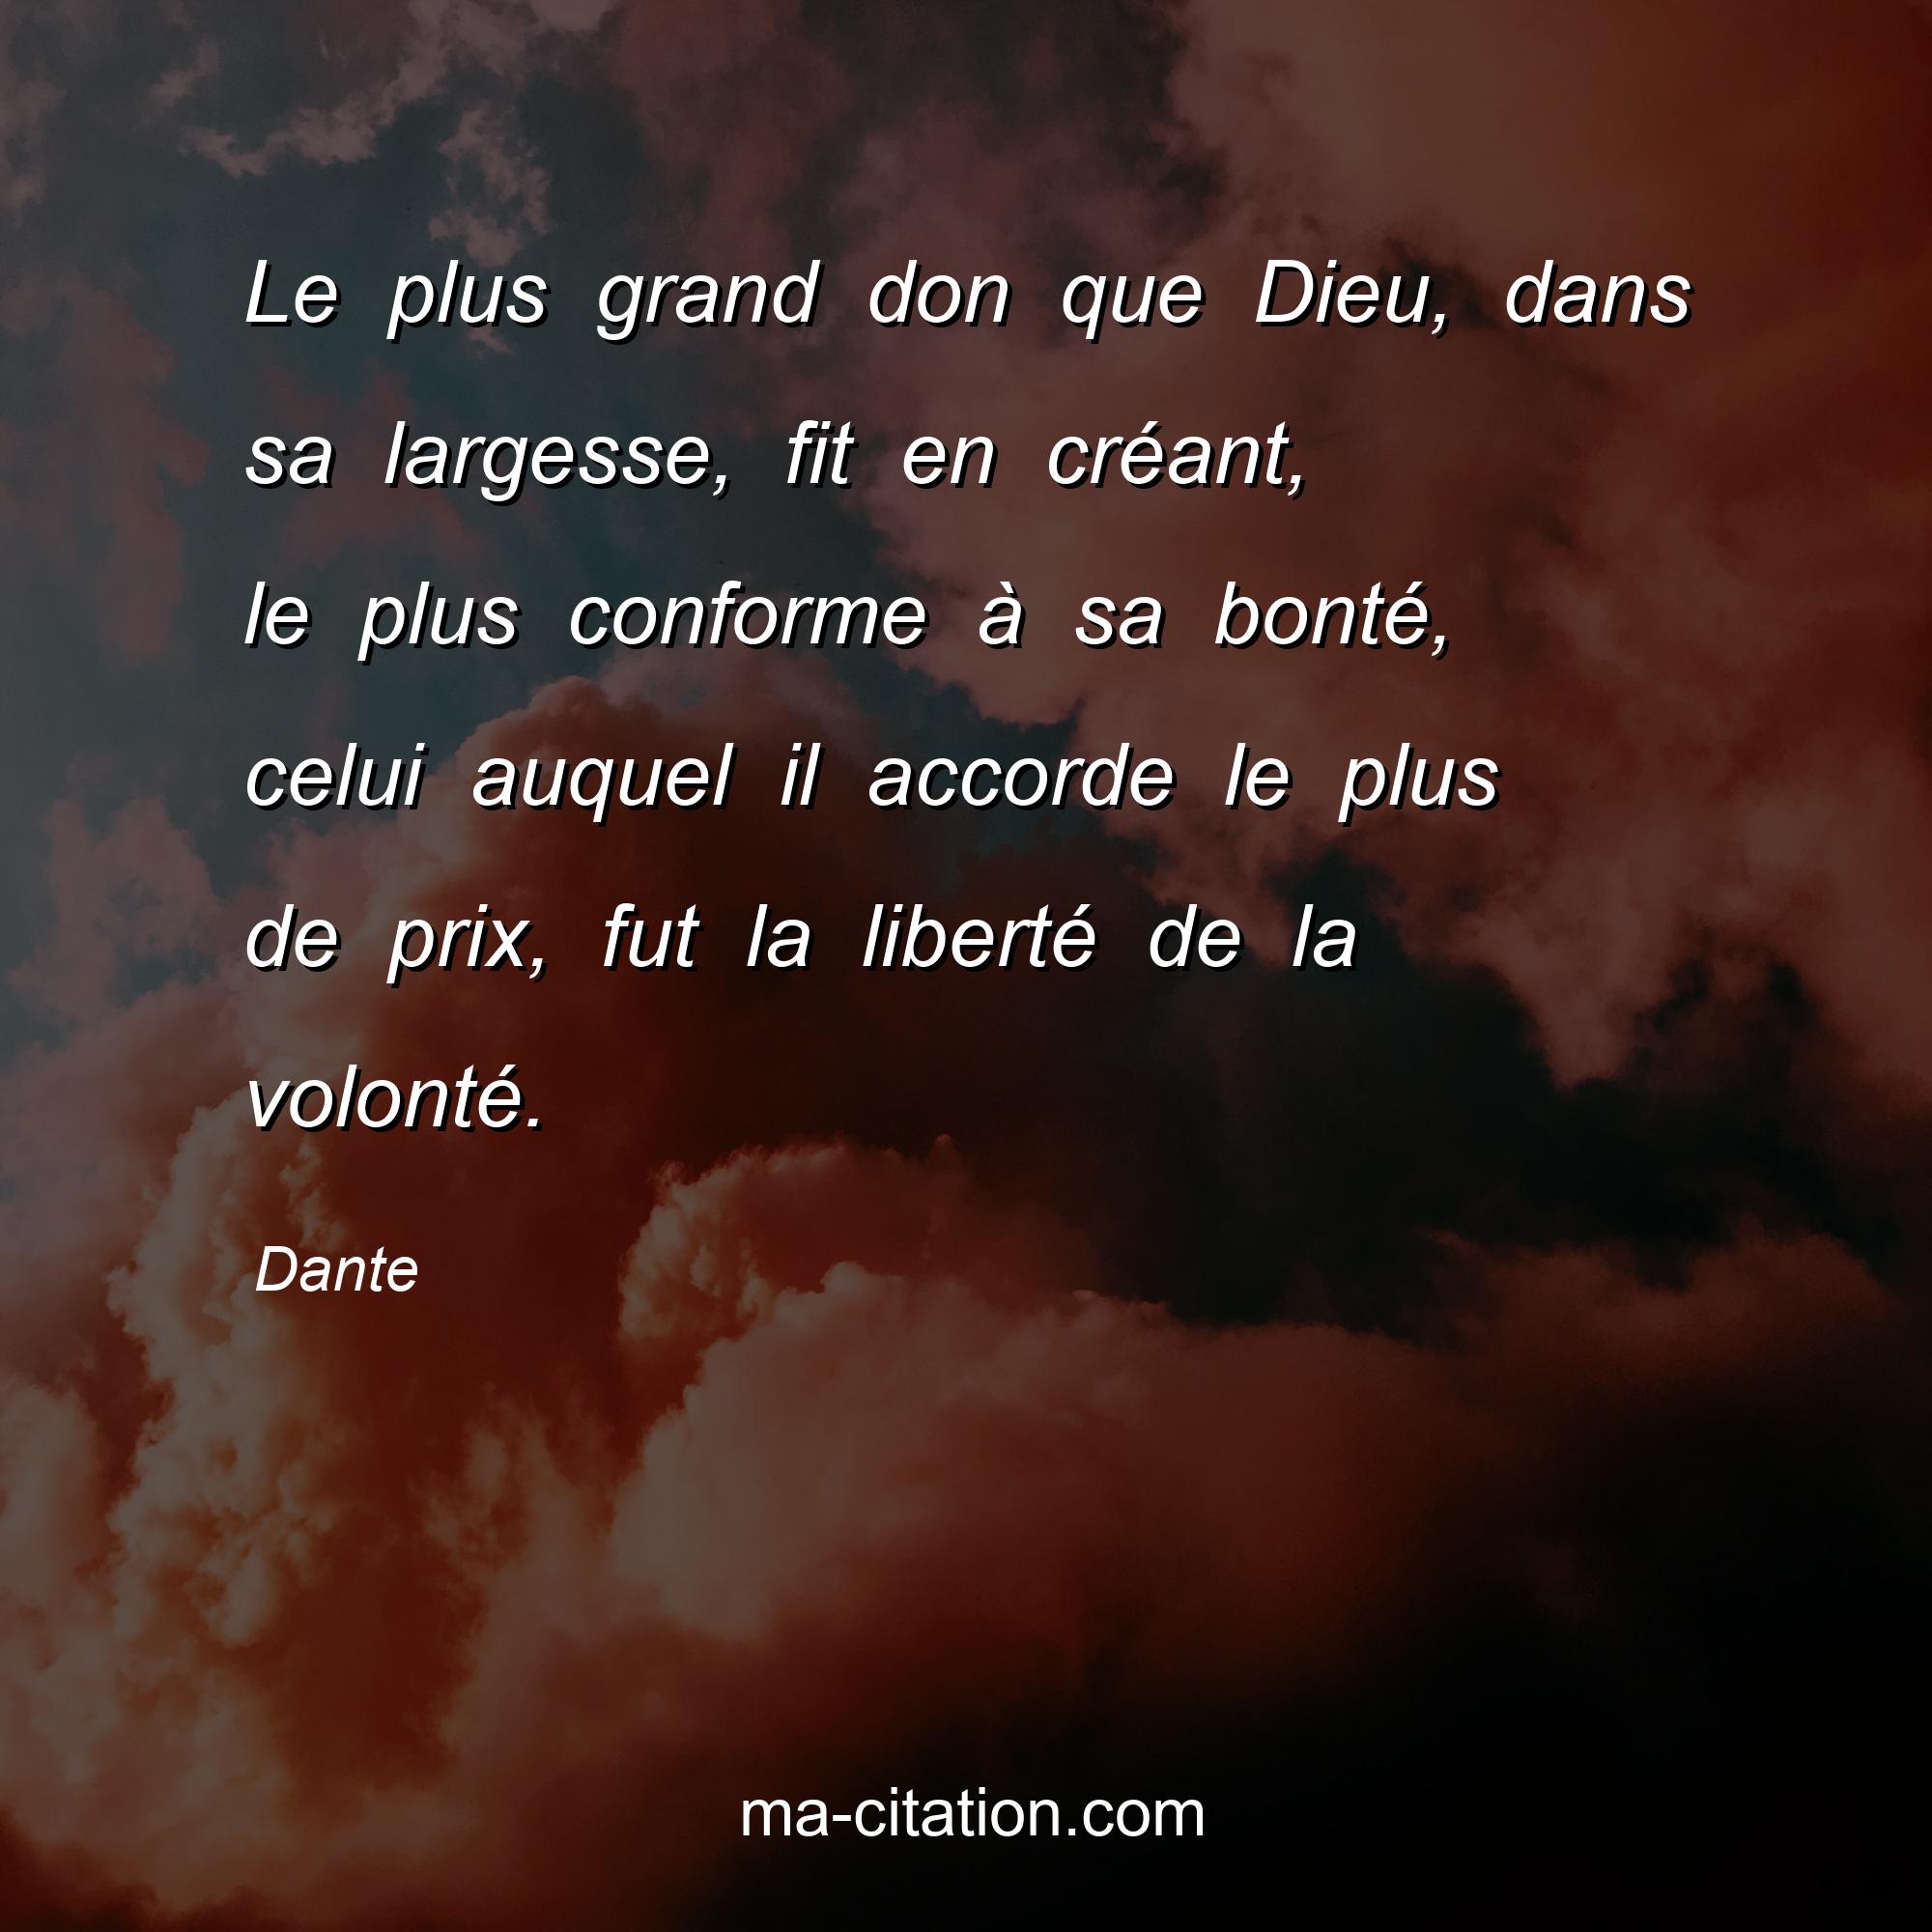 Dante : Le plus grand don que Dieu, dans sa largesse, fit en créant, le plus conforme à sa bonté, celui auquel il accorde le plus de prix, fut la liberté de la volonté.